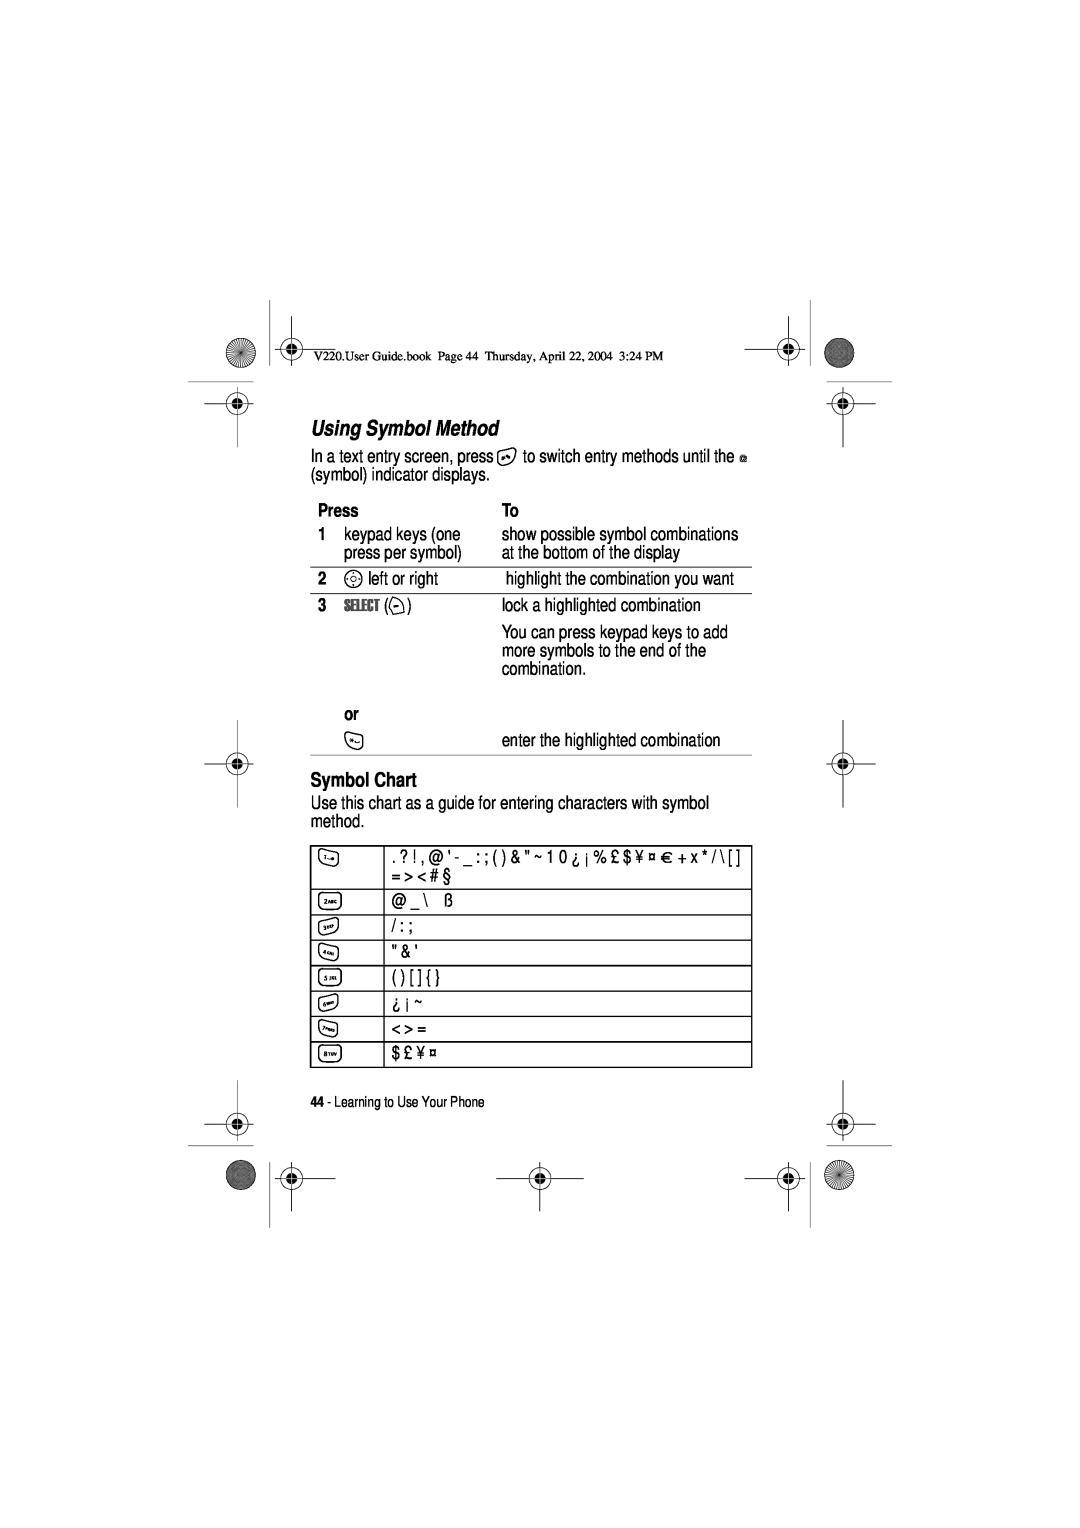 Motorola V220 manual Using Symbol Method, Symbol Chart, 6/&7 + 